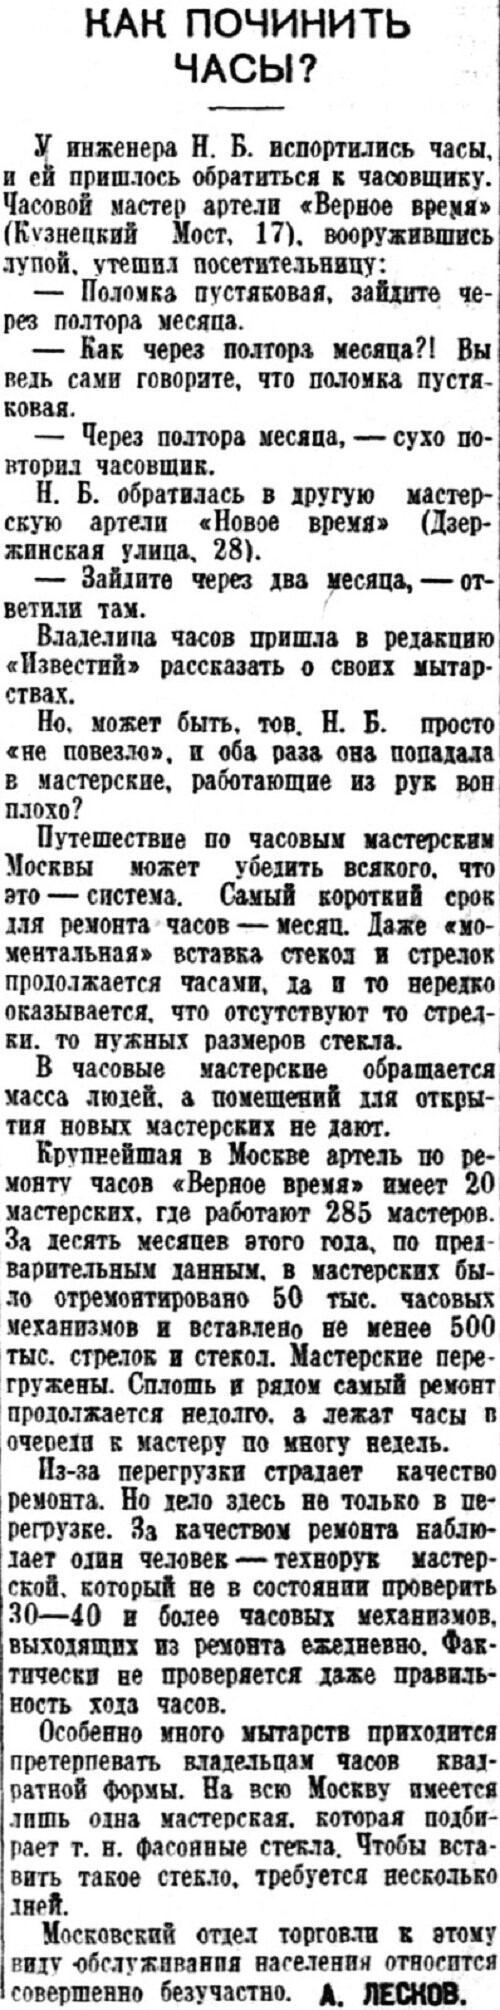 «Известия», 23 декабря 1938 г.